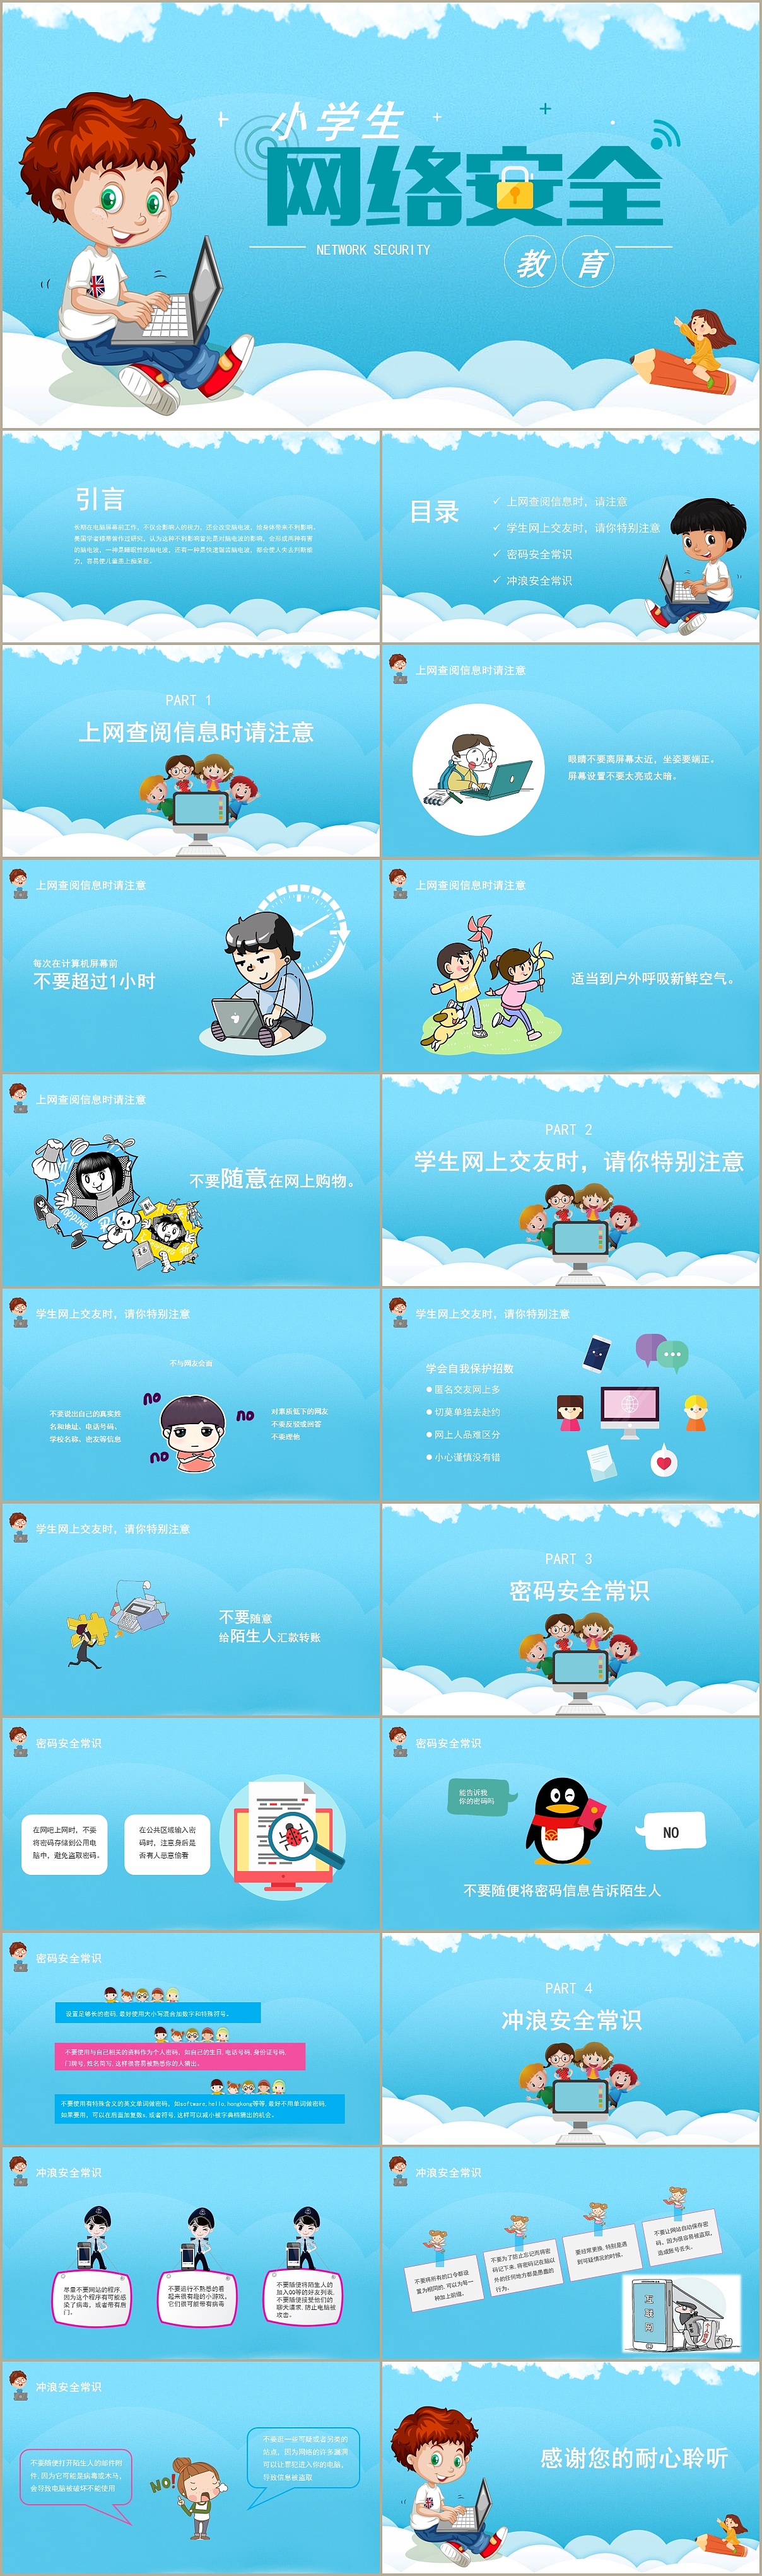 清新卡通风中小学生网络安全教育培训课件ppt模板